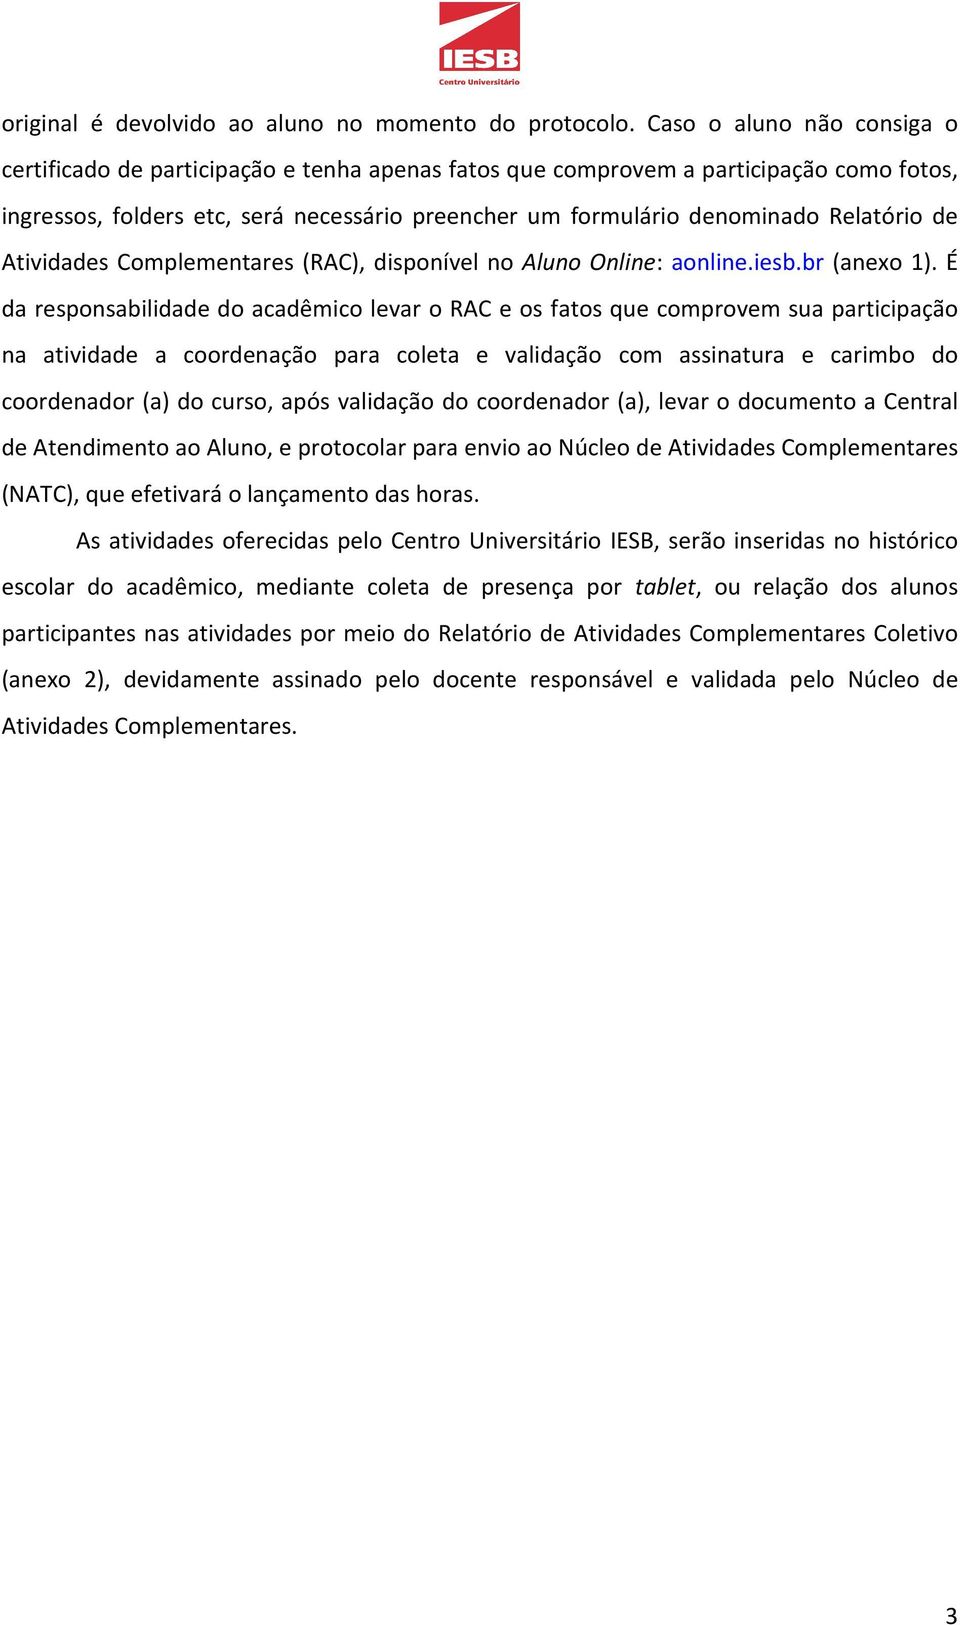 Relatório de Atividades Complementares (RAC), disponível no Aluno Online: aonline.iesb.br (anexo 1).